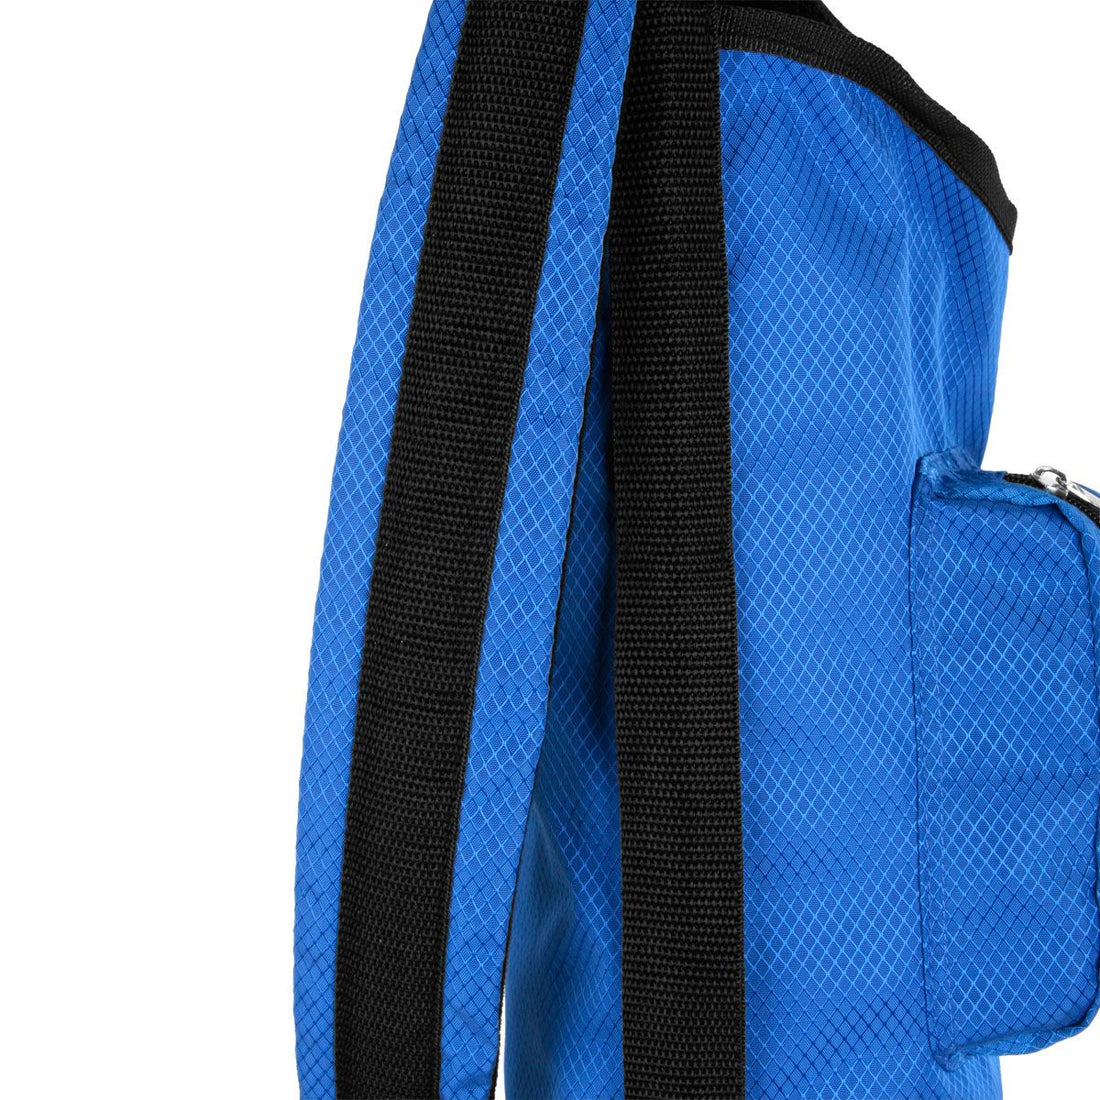 shoulder strap hanging down on the side of a blue Orlimar Sunday Golf Bag